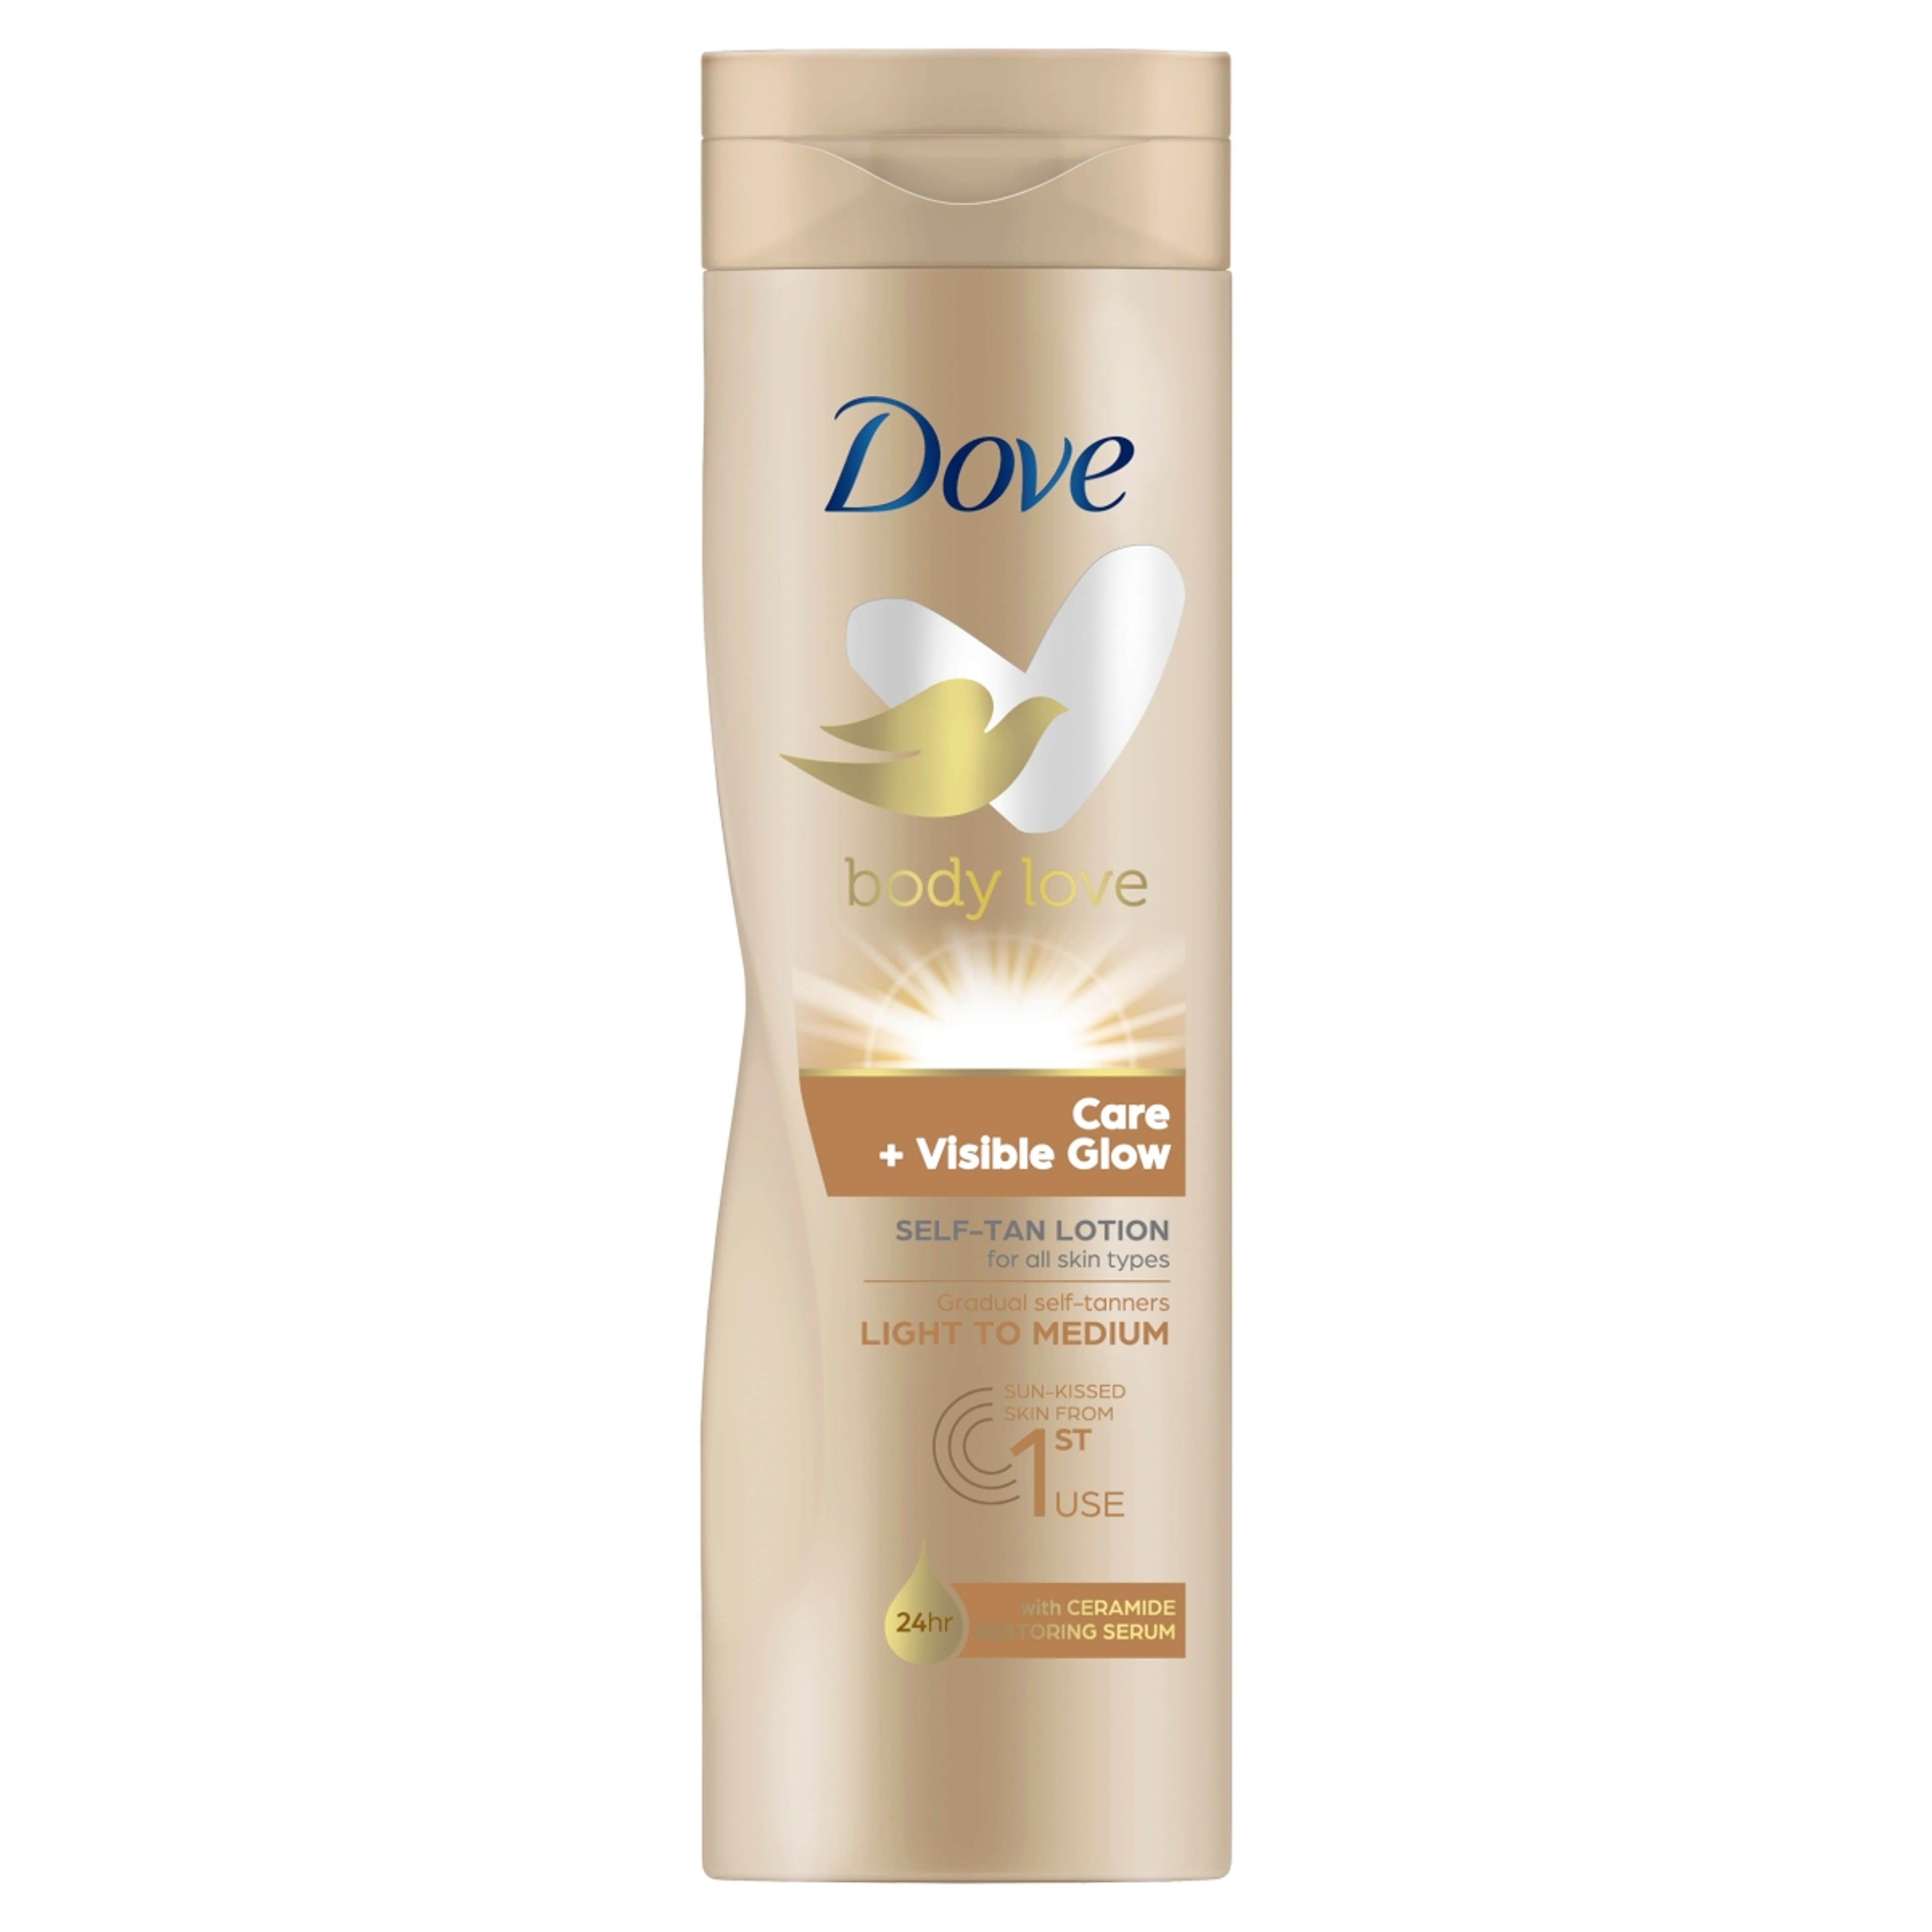 Dove Body Love Care + Visible Glow önbarnító testápoló a világos-közepes árnyalatú bőrért - 250 ml